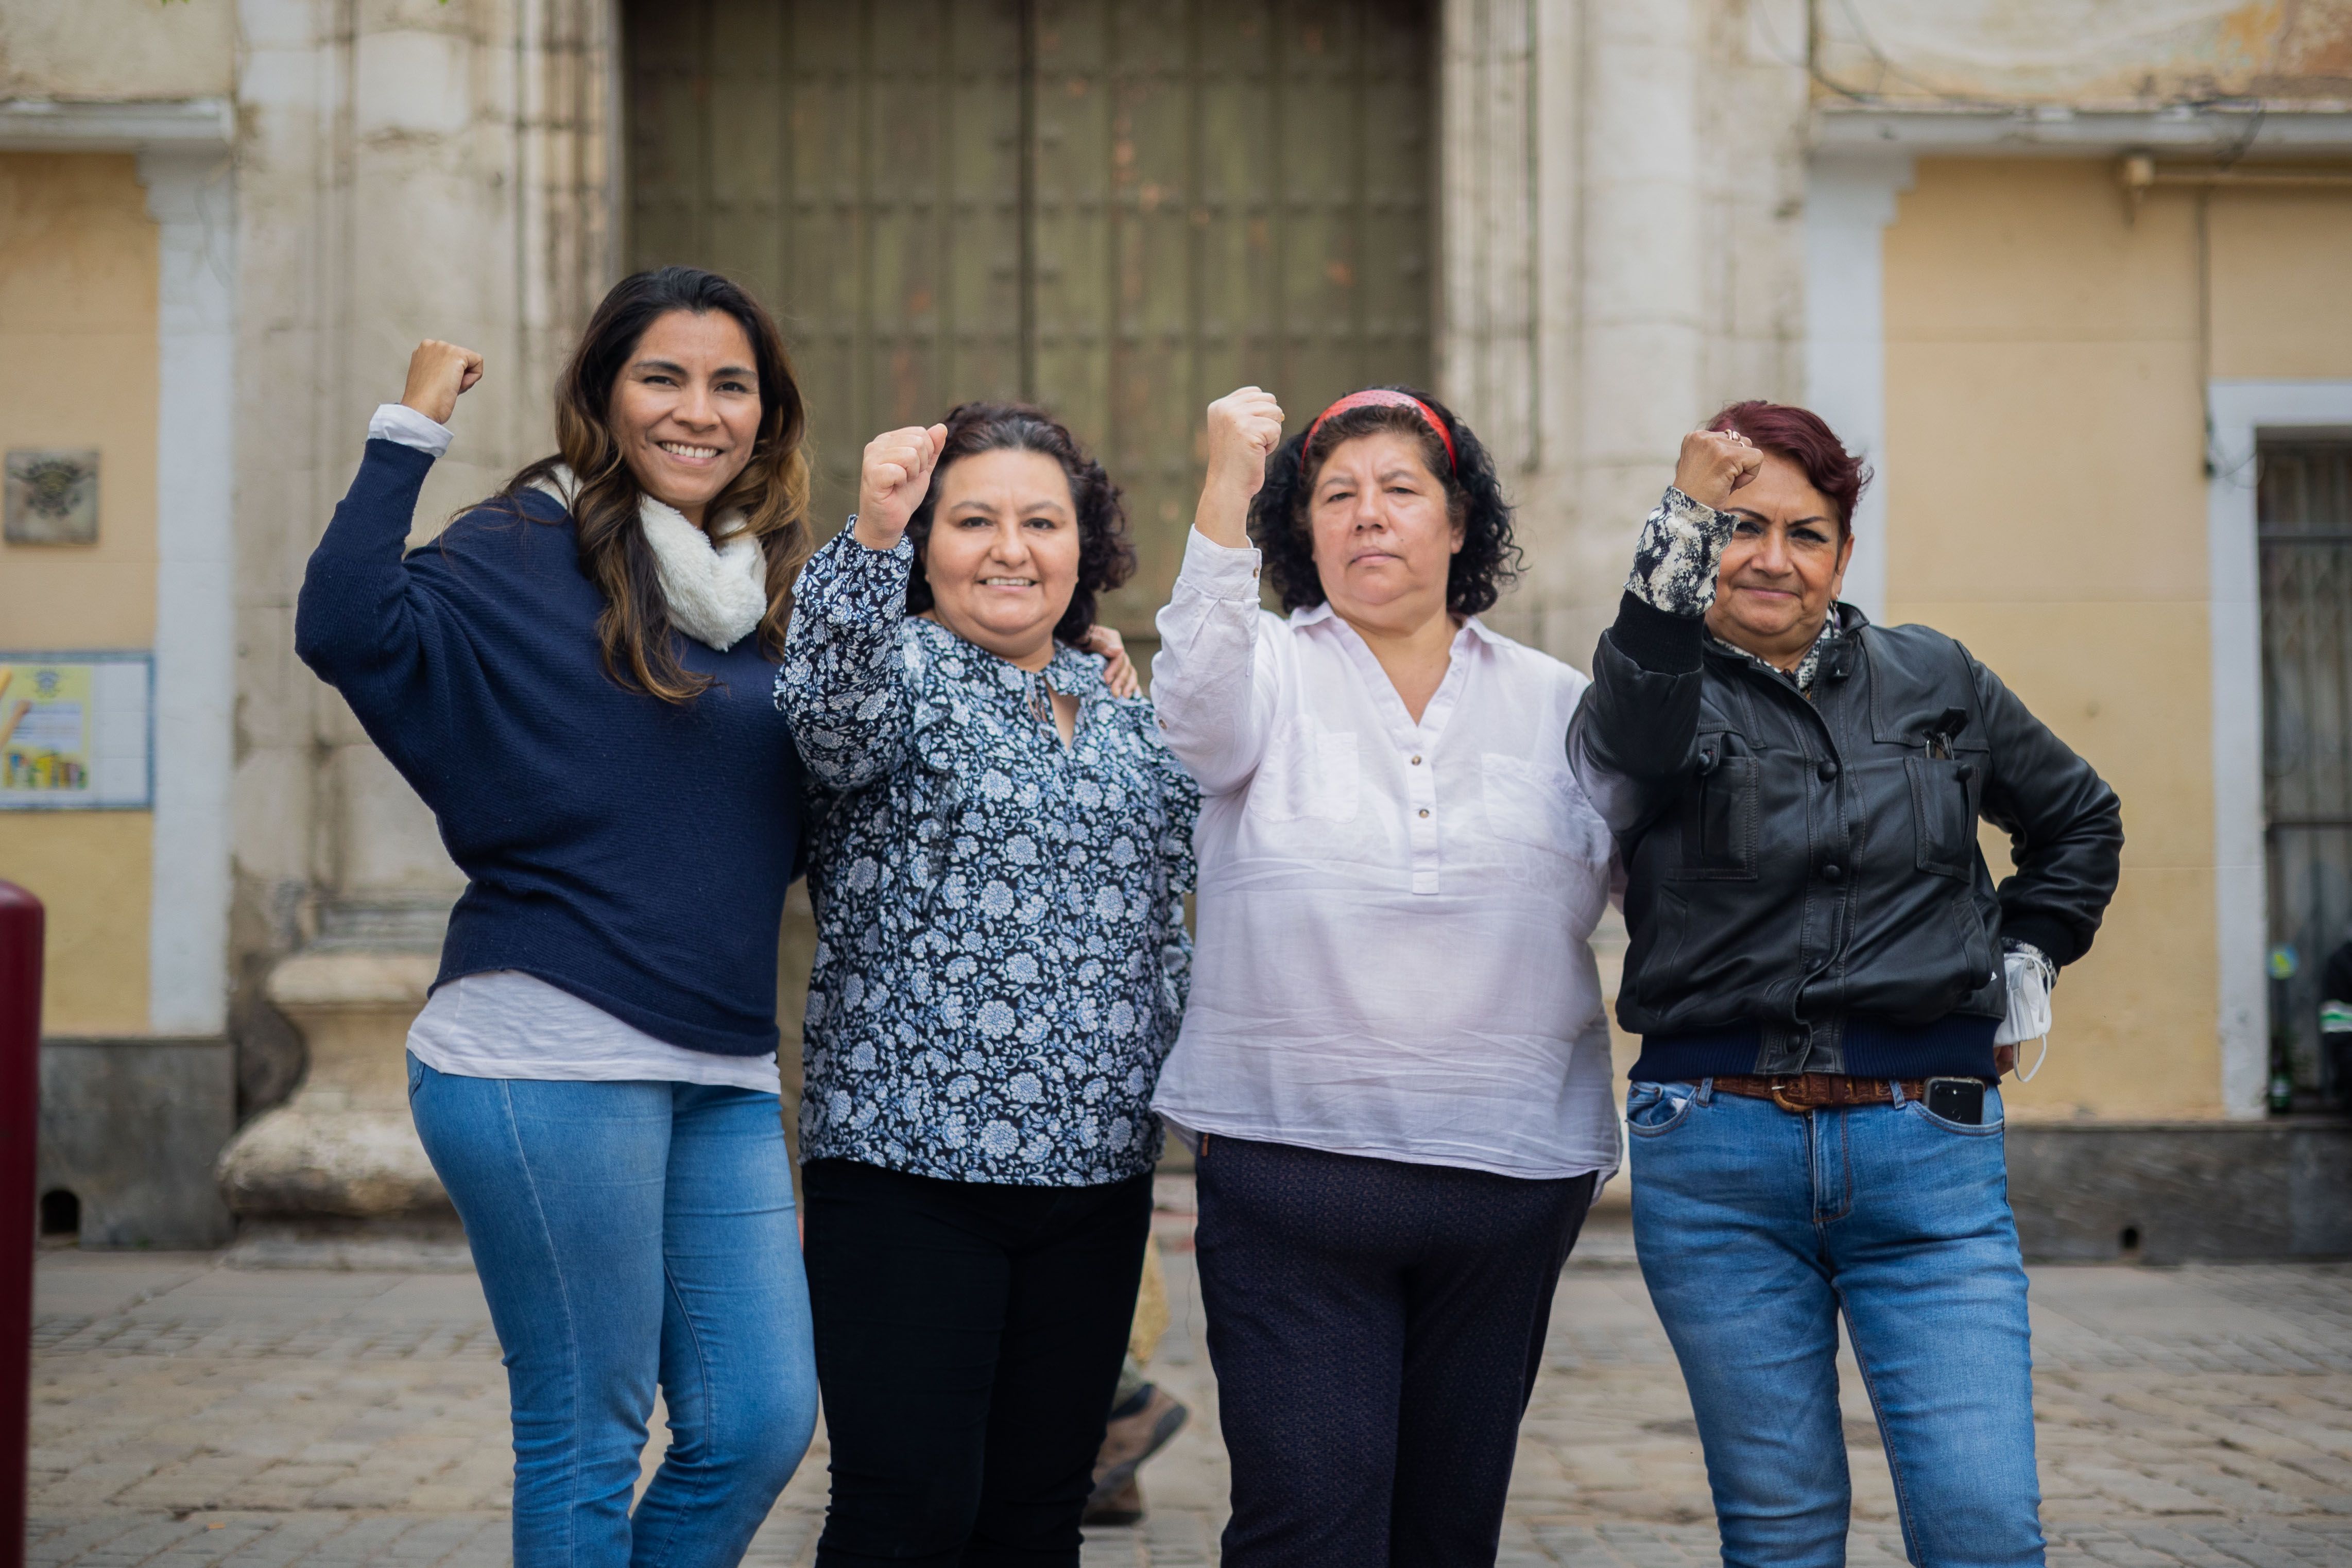 De izquierda a derecha: Cecilia, Jacqueline, Sady y Margot, trabajadoras del hogar y los cuidados e integrantes de la Asociación de Trabajadoras y Trabajadores del Hogar de Sevilla.